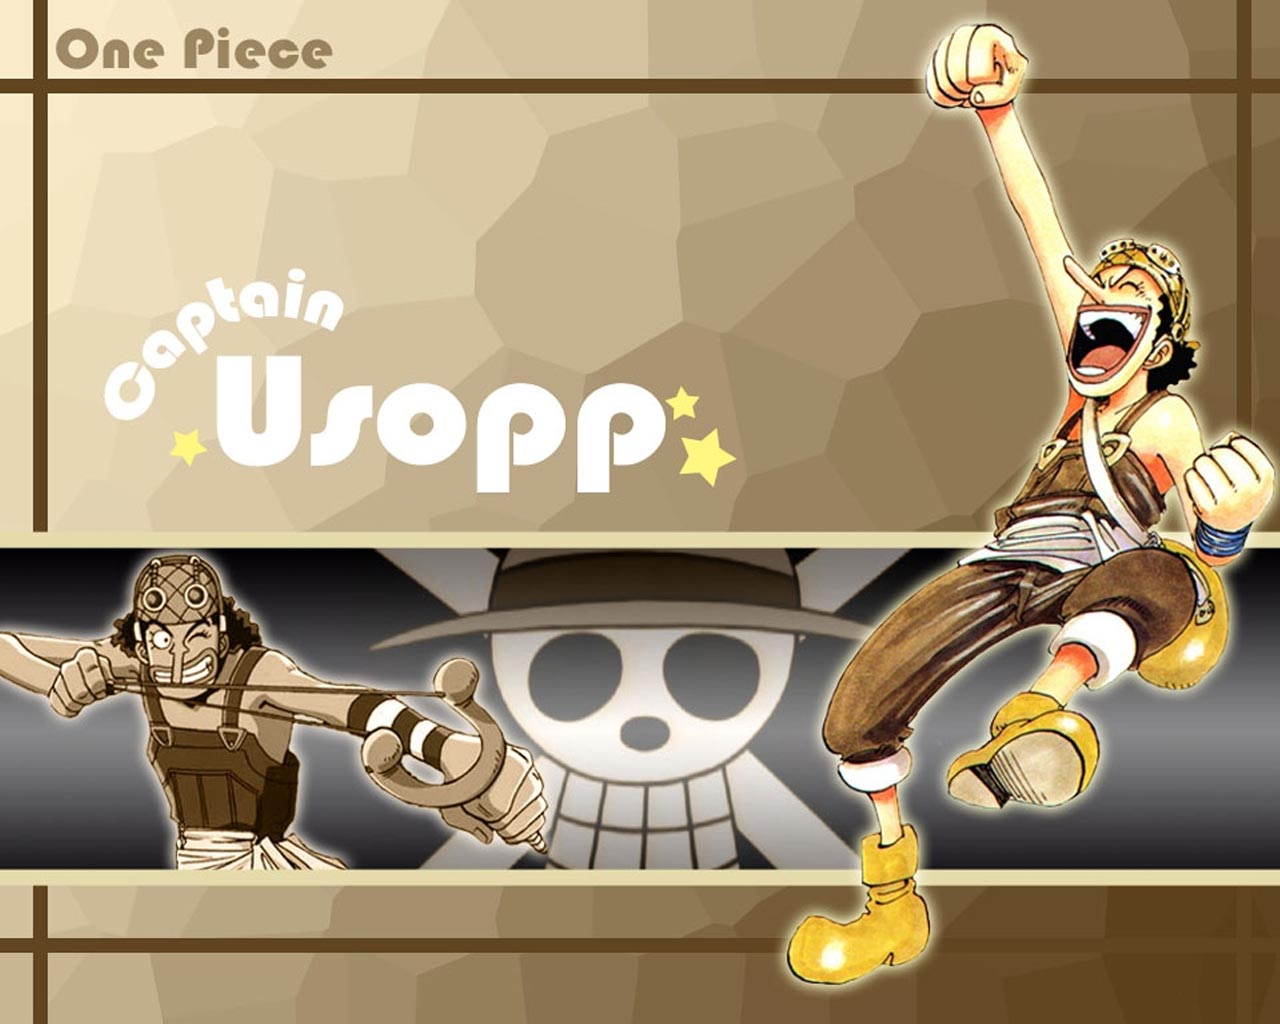 Usop One Piece